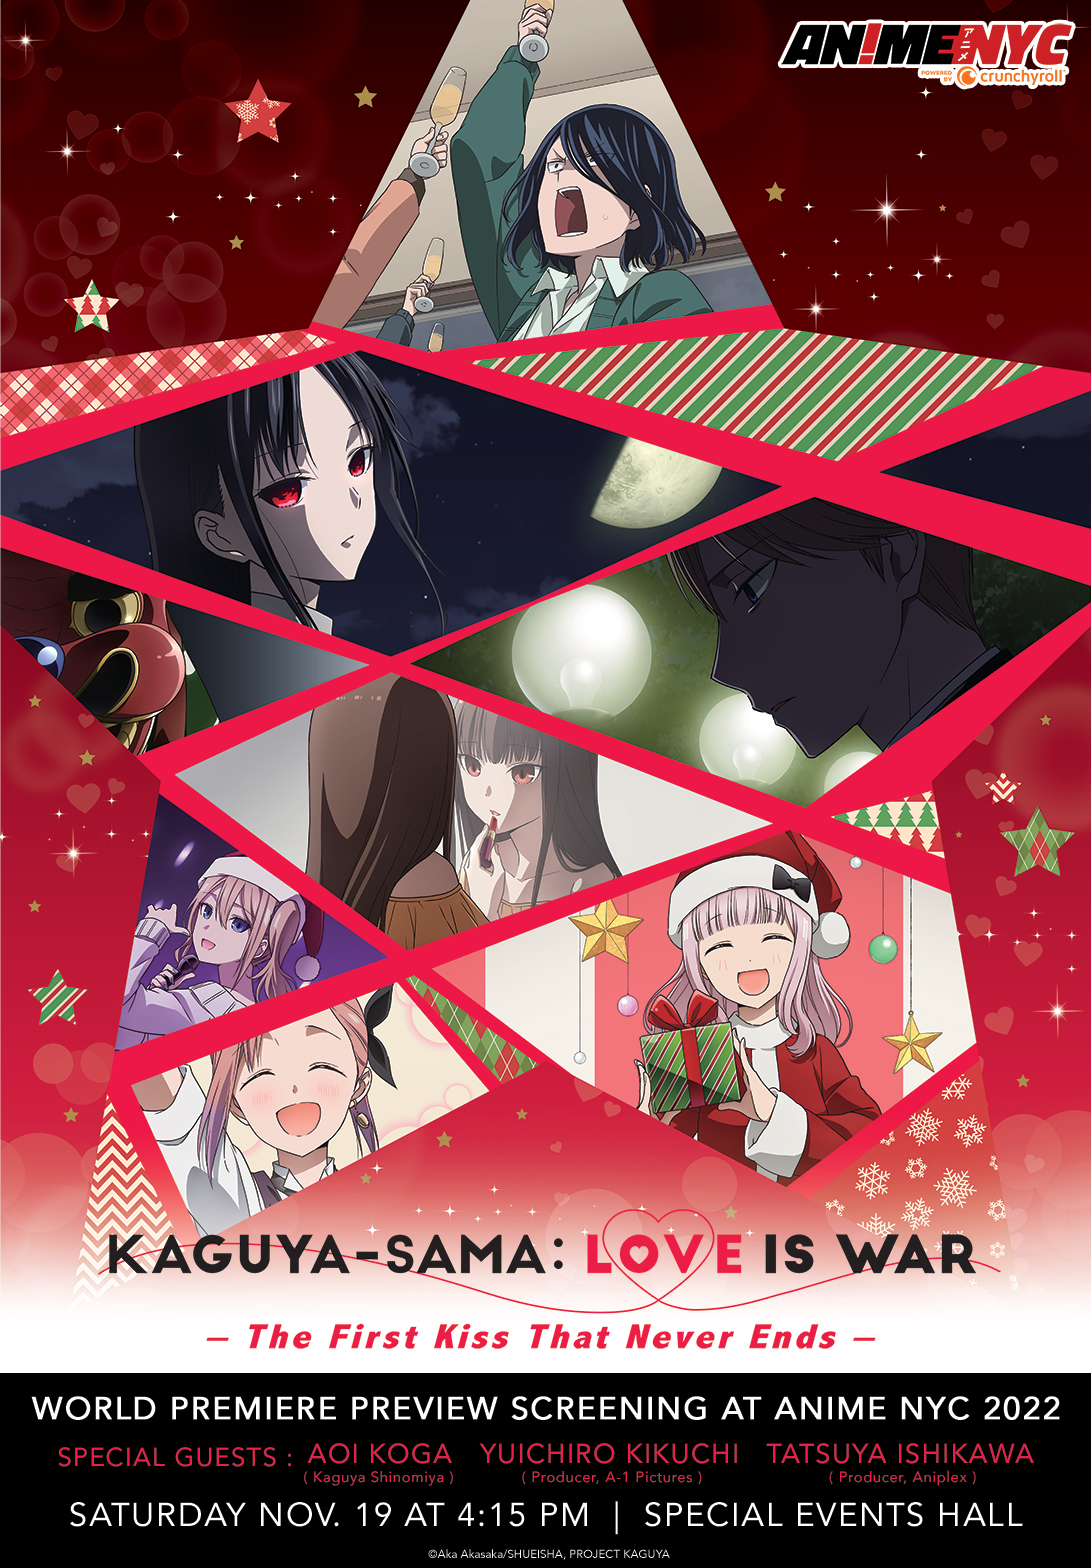 Kaguya-sama: Love Is War creator Akasaka announces retirement